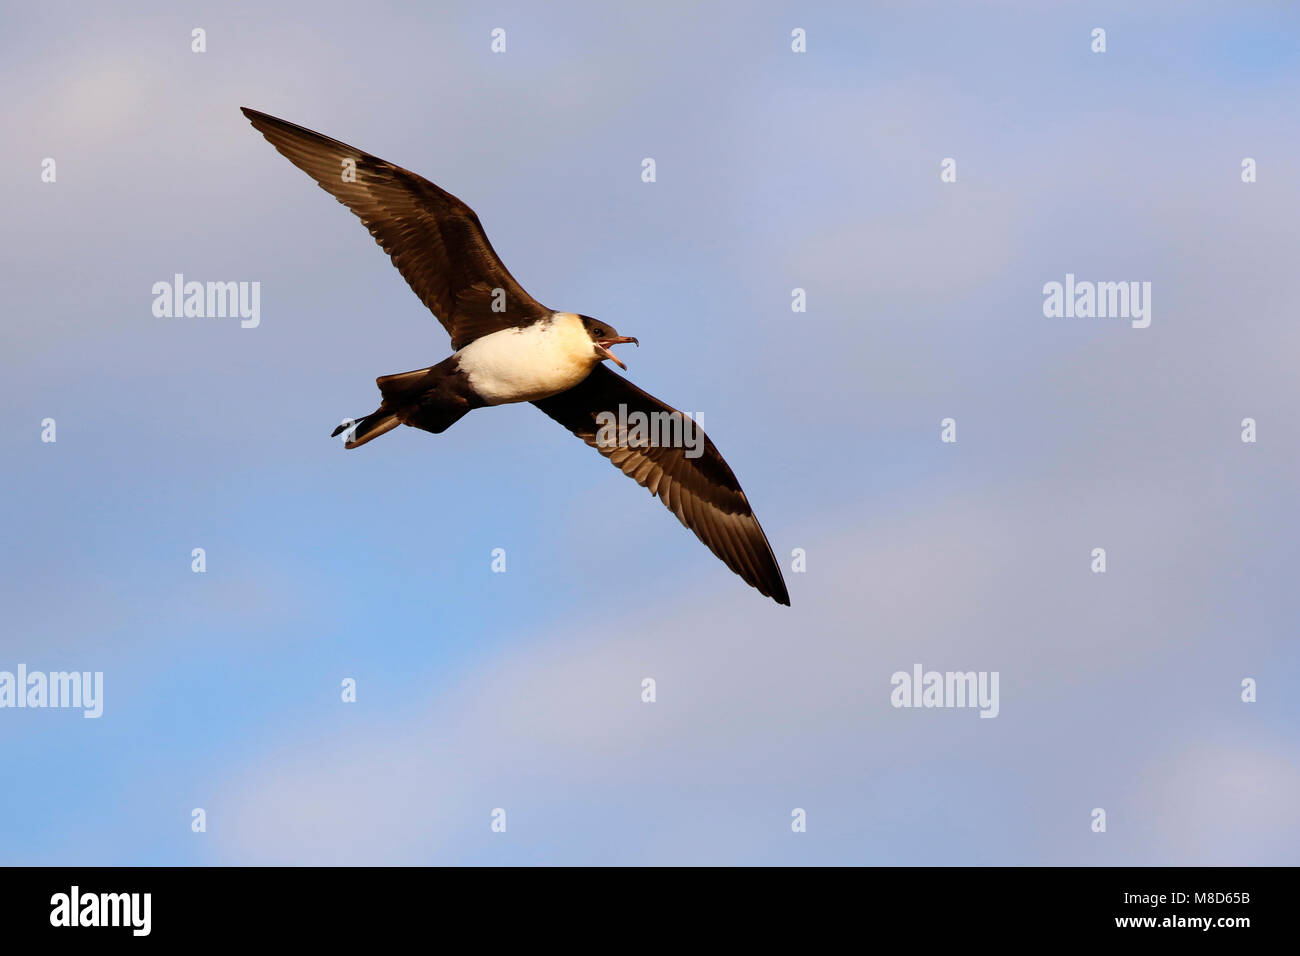 Vliegende Middelste Jager; Flying Pomarine Skua Stock Photo